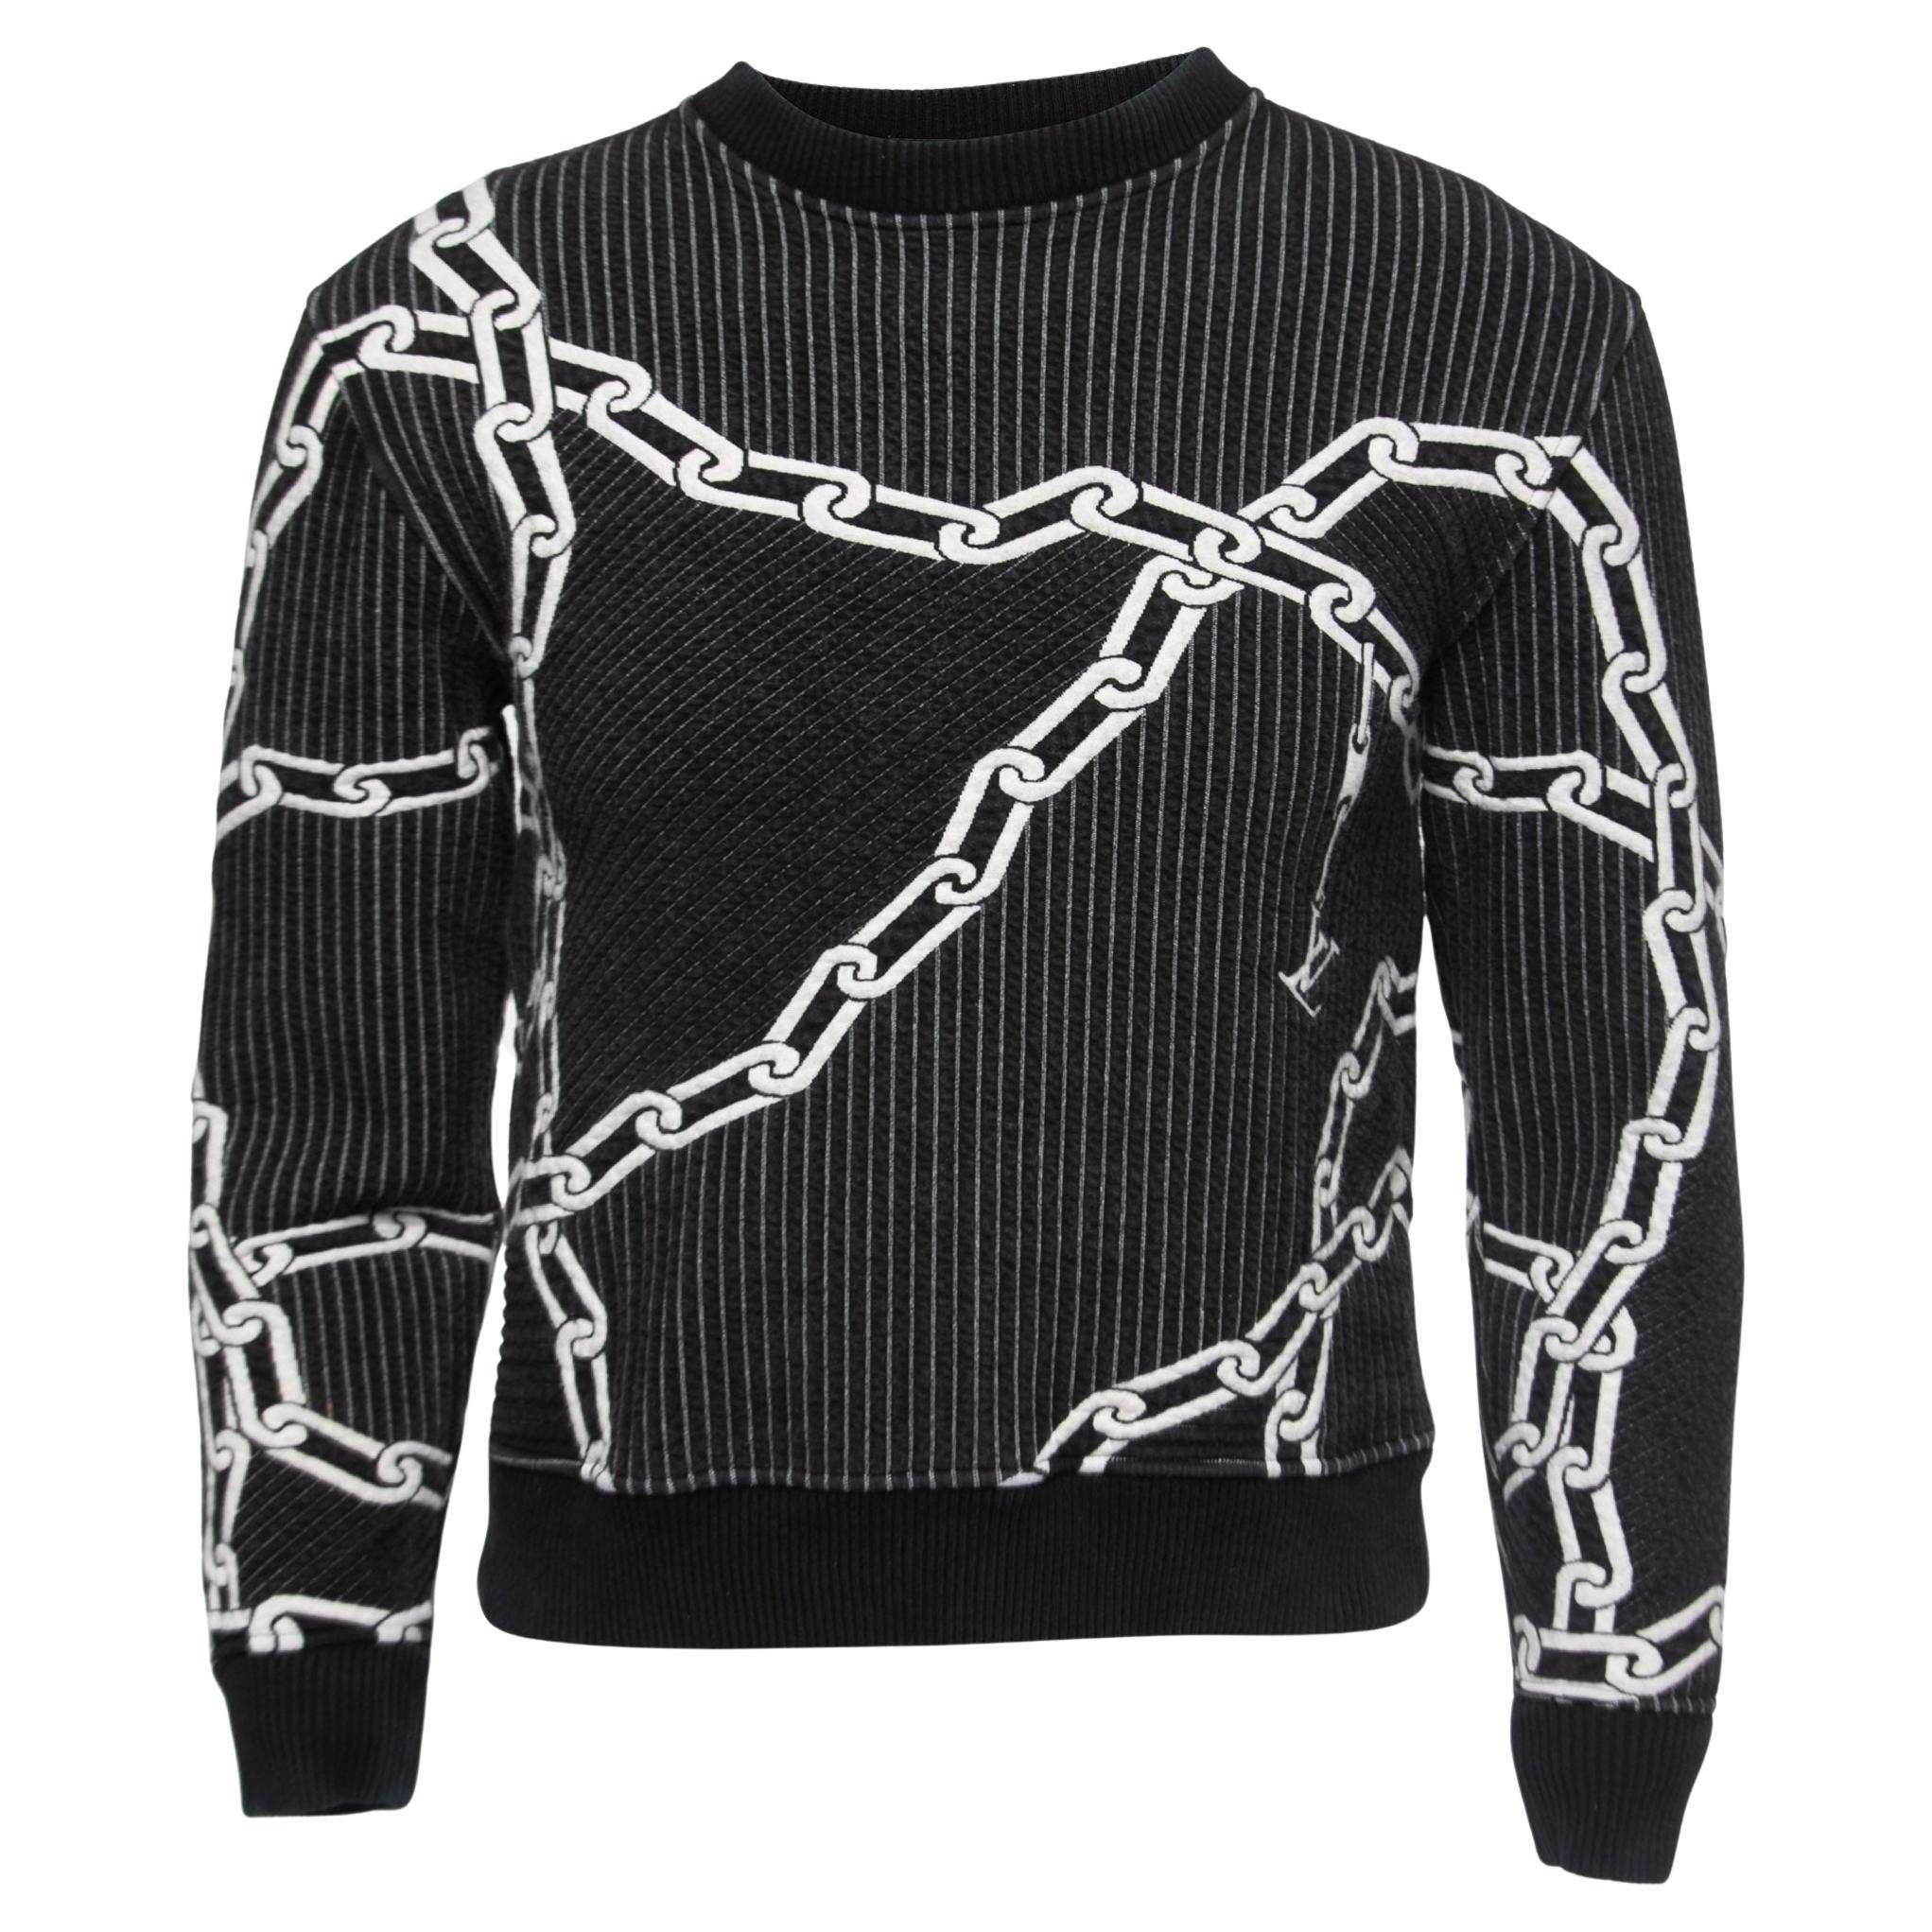 Black Louis Vuitton Sweatshirt - 2 For Sale on | black louis vuitton jumper